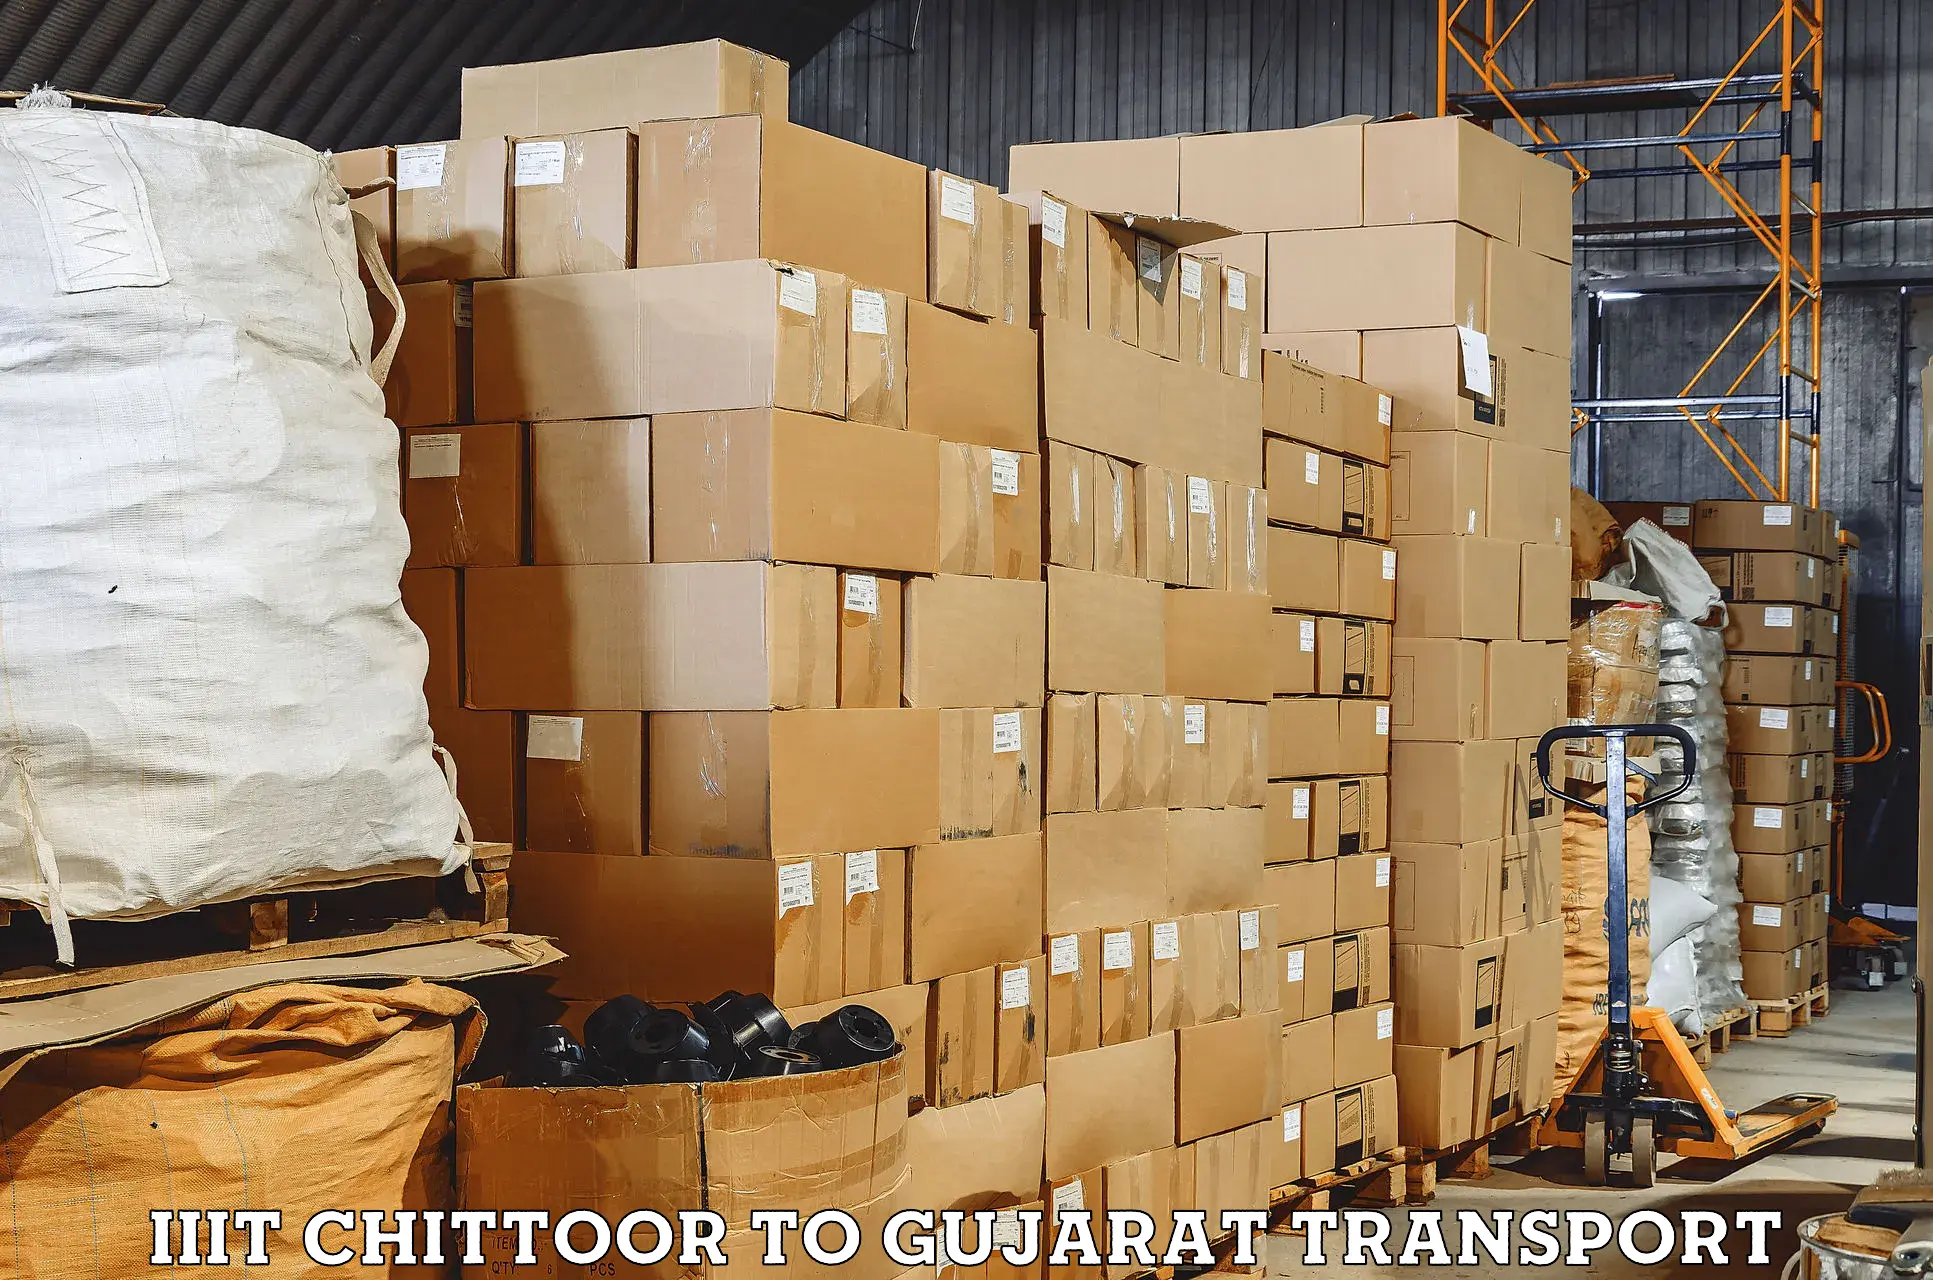 Road transport online services IIIT Chittoor to Vadodara